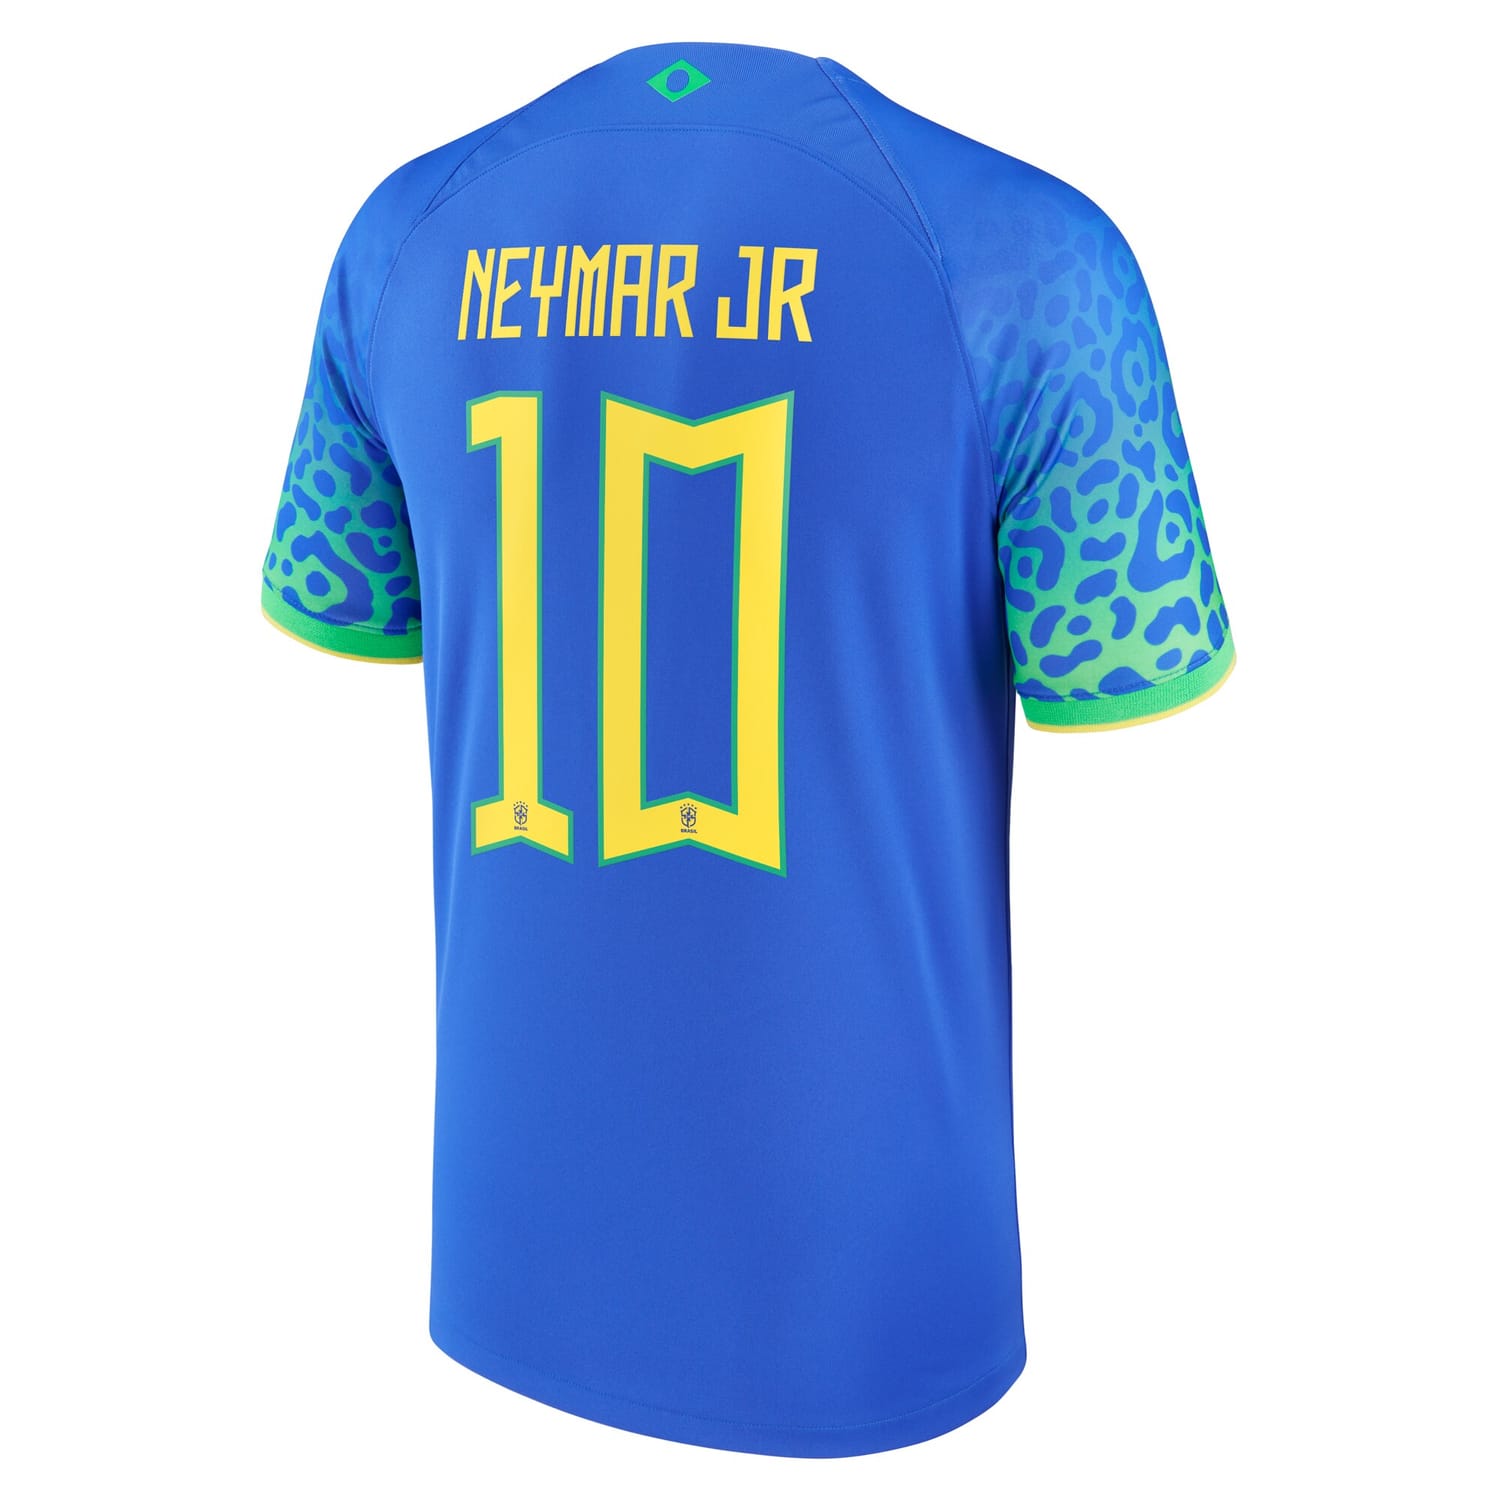 Brazil National Team Away Jersey Shirt Blue 2022-23 player Neymar Jr. printing for Men